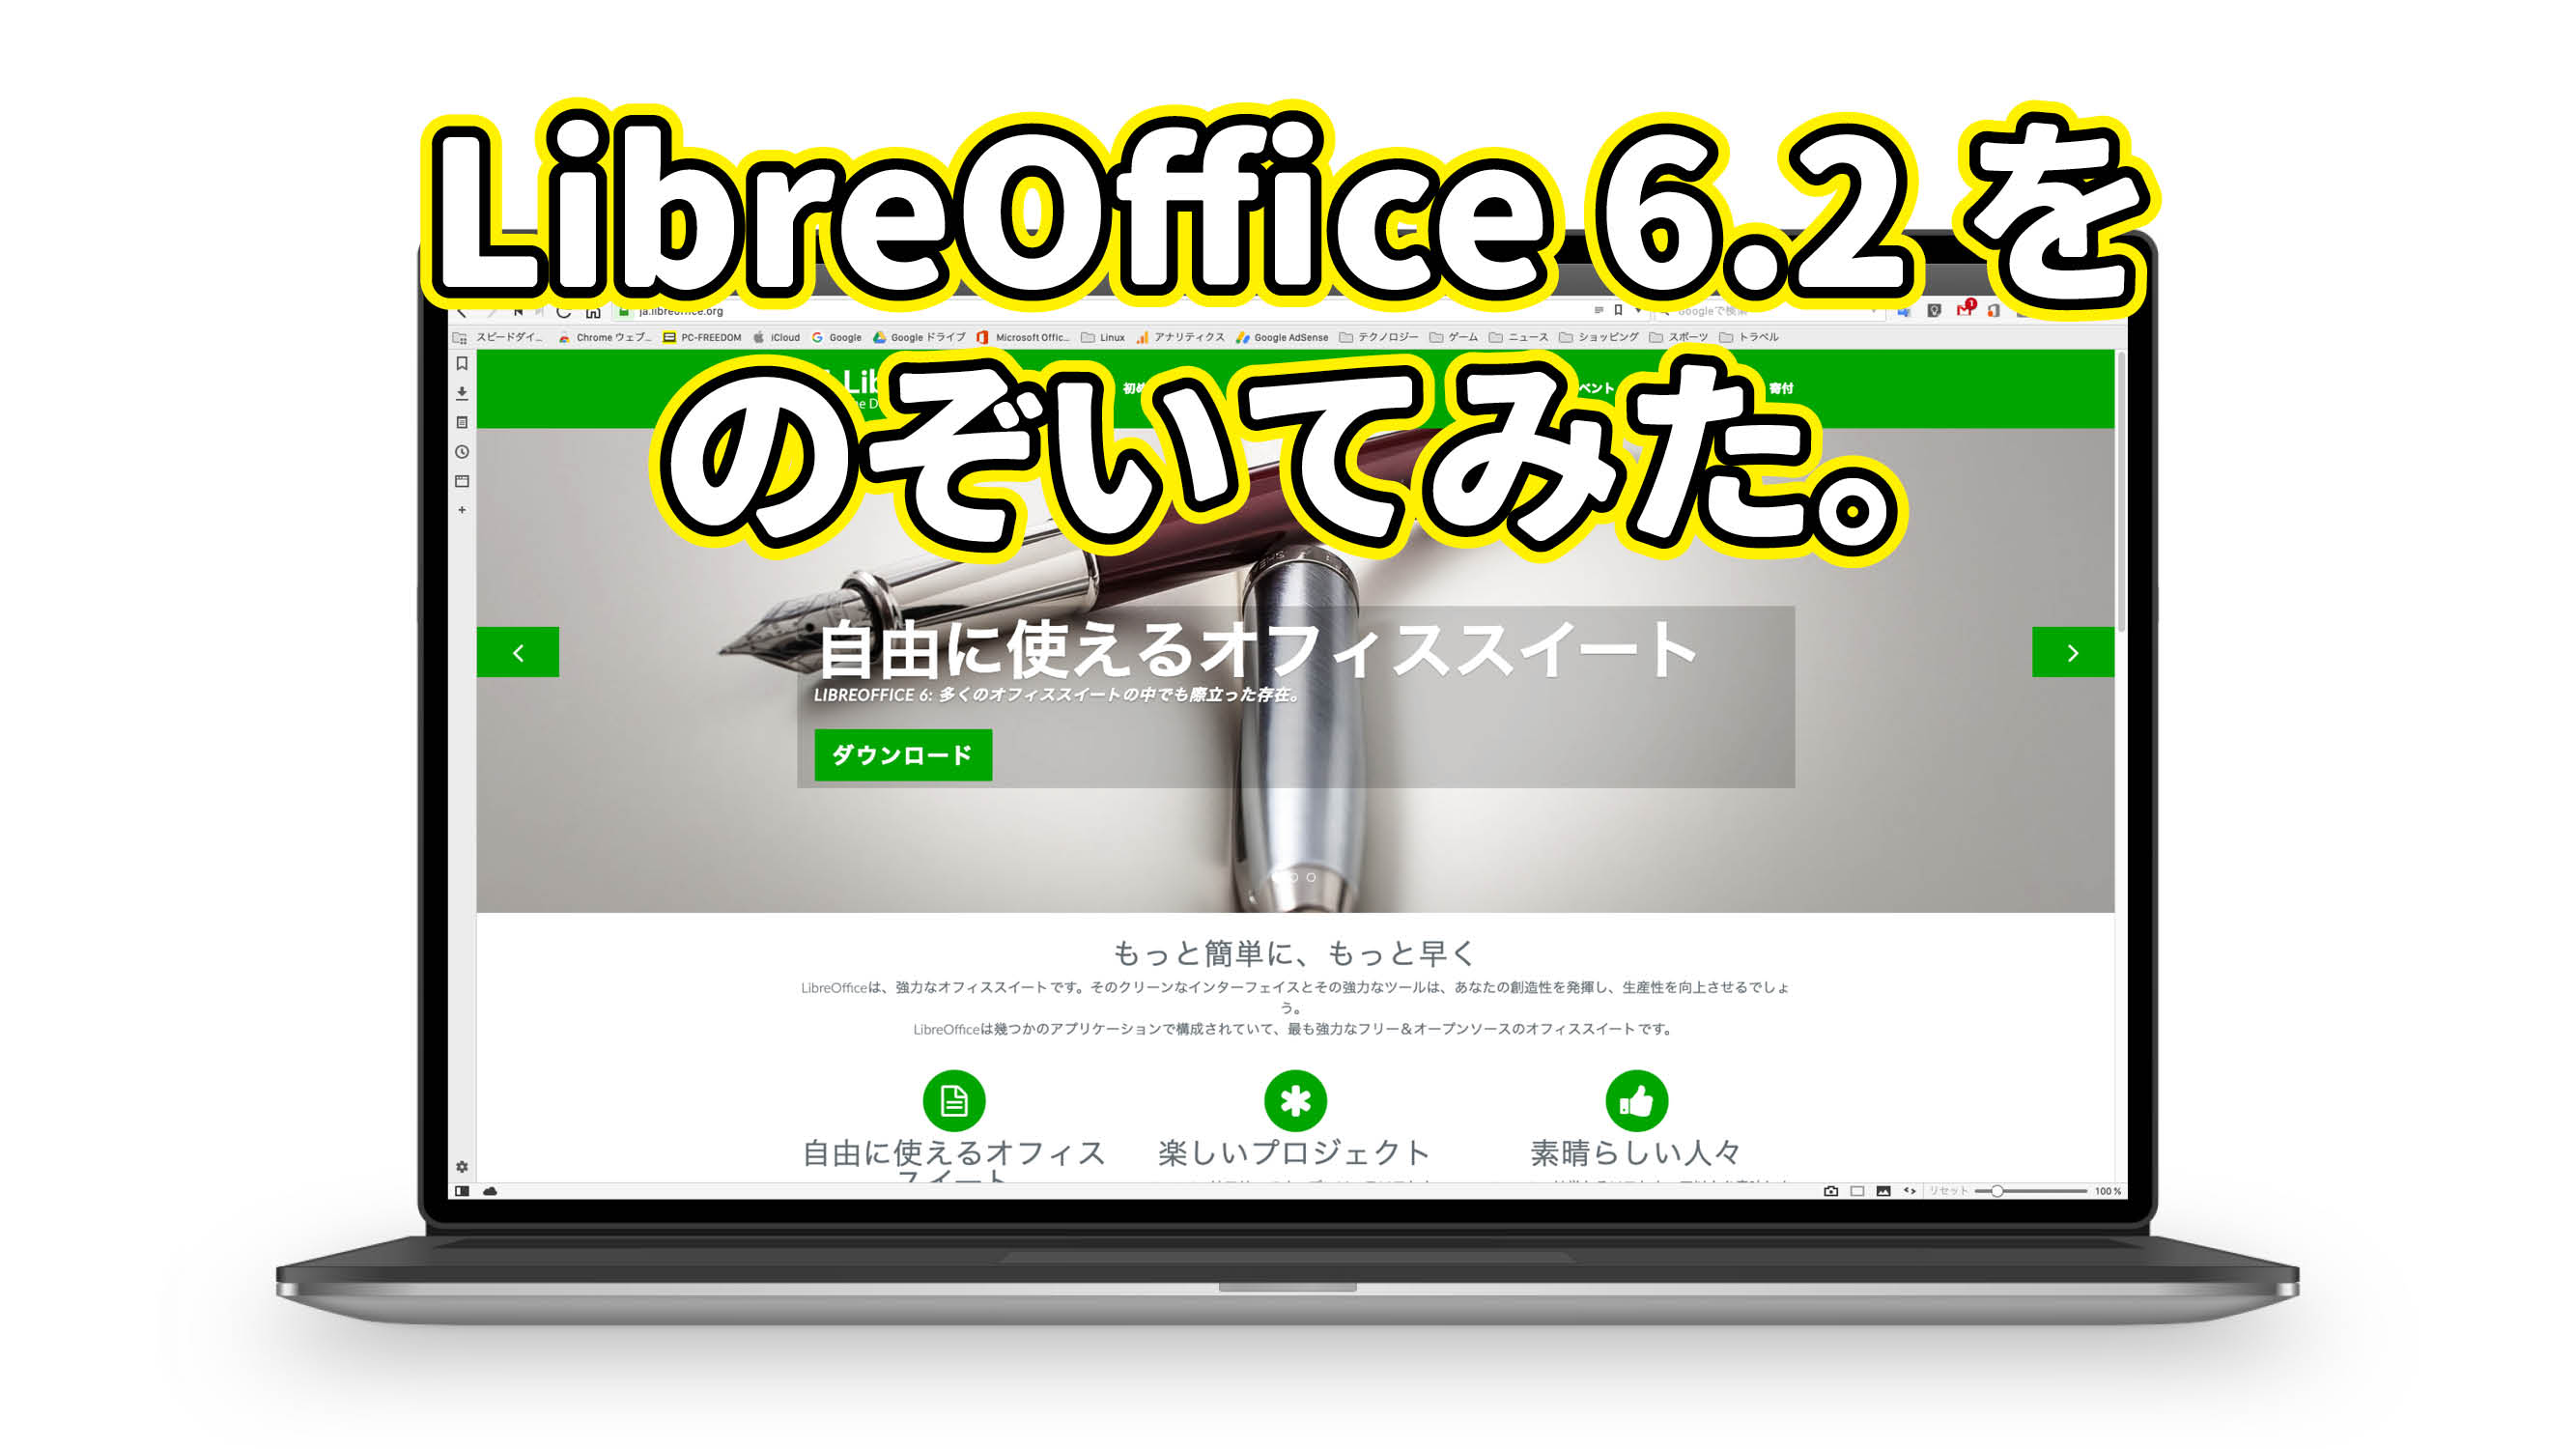 LibreOffice 6.2 をのぞいてみた。